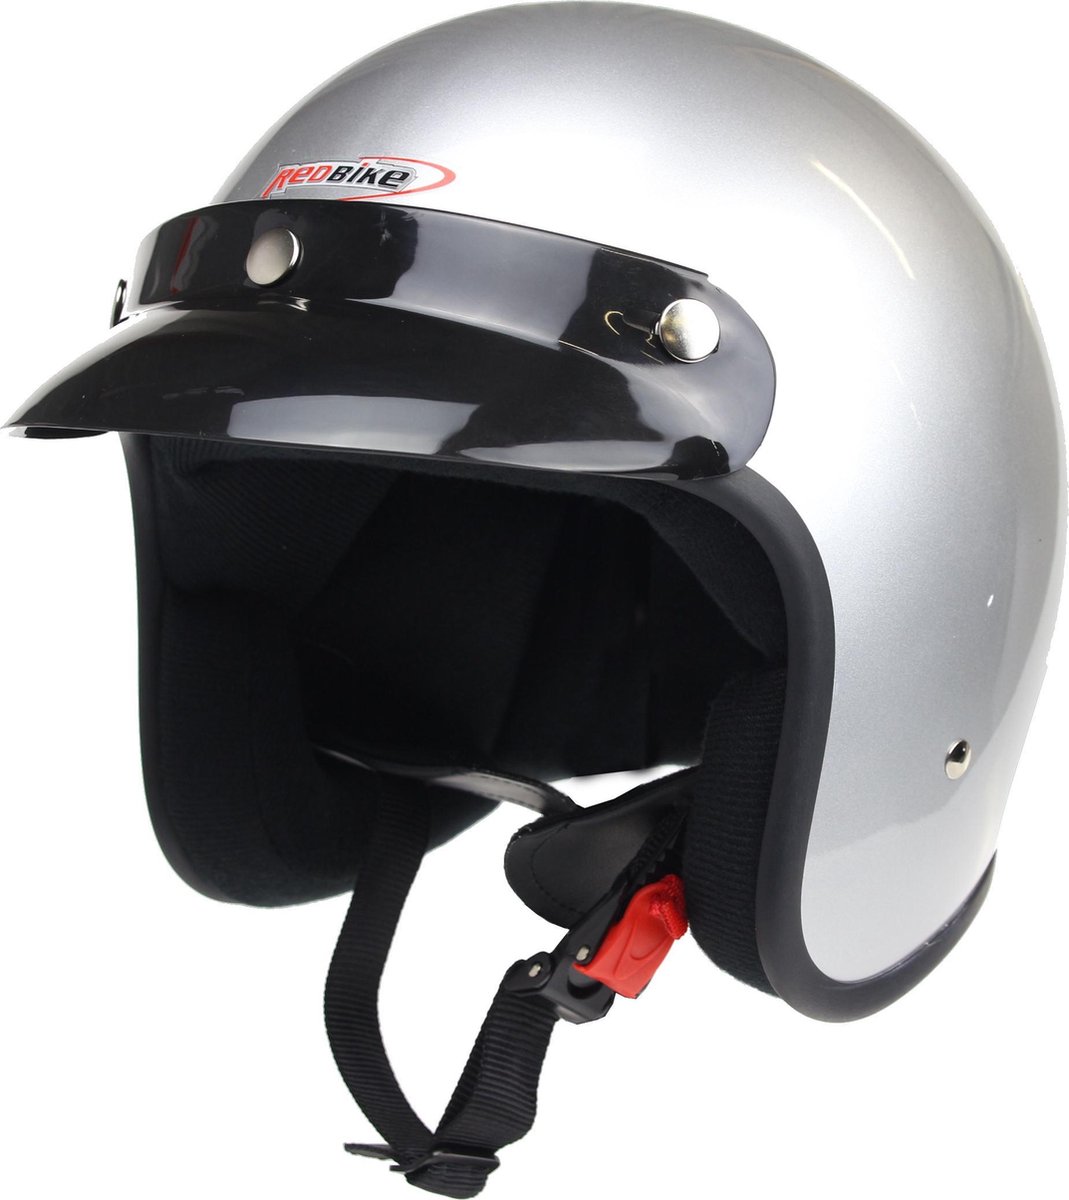 Redbike RB-710 - helm scooter - retro jethelm - zilver - maat XL